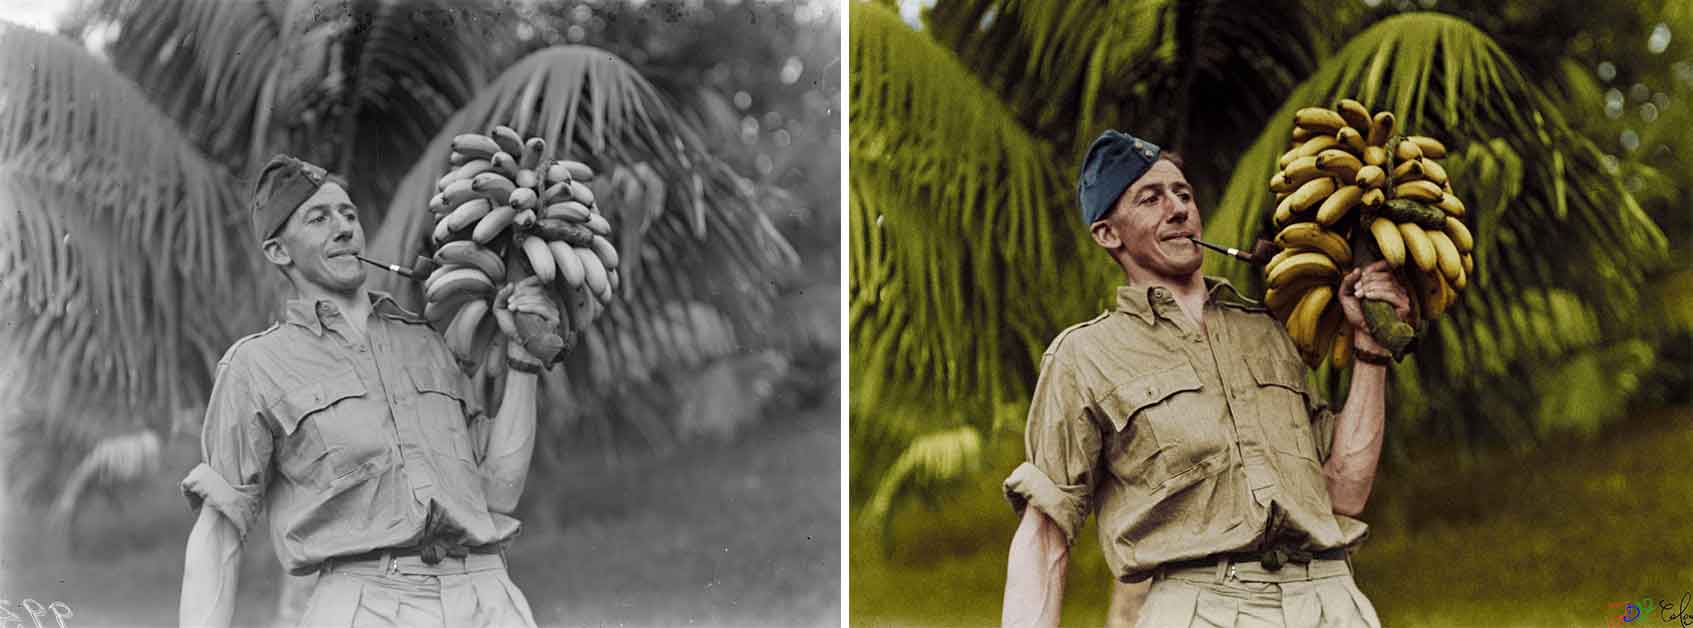 Flight Lieutenant HR Wigley, with a bunch of bananas. Norfolk Island, September 1943.